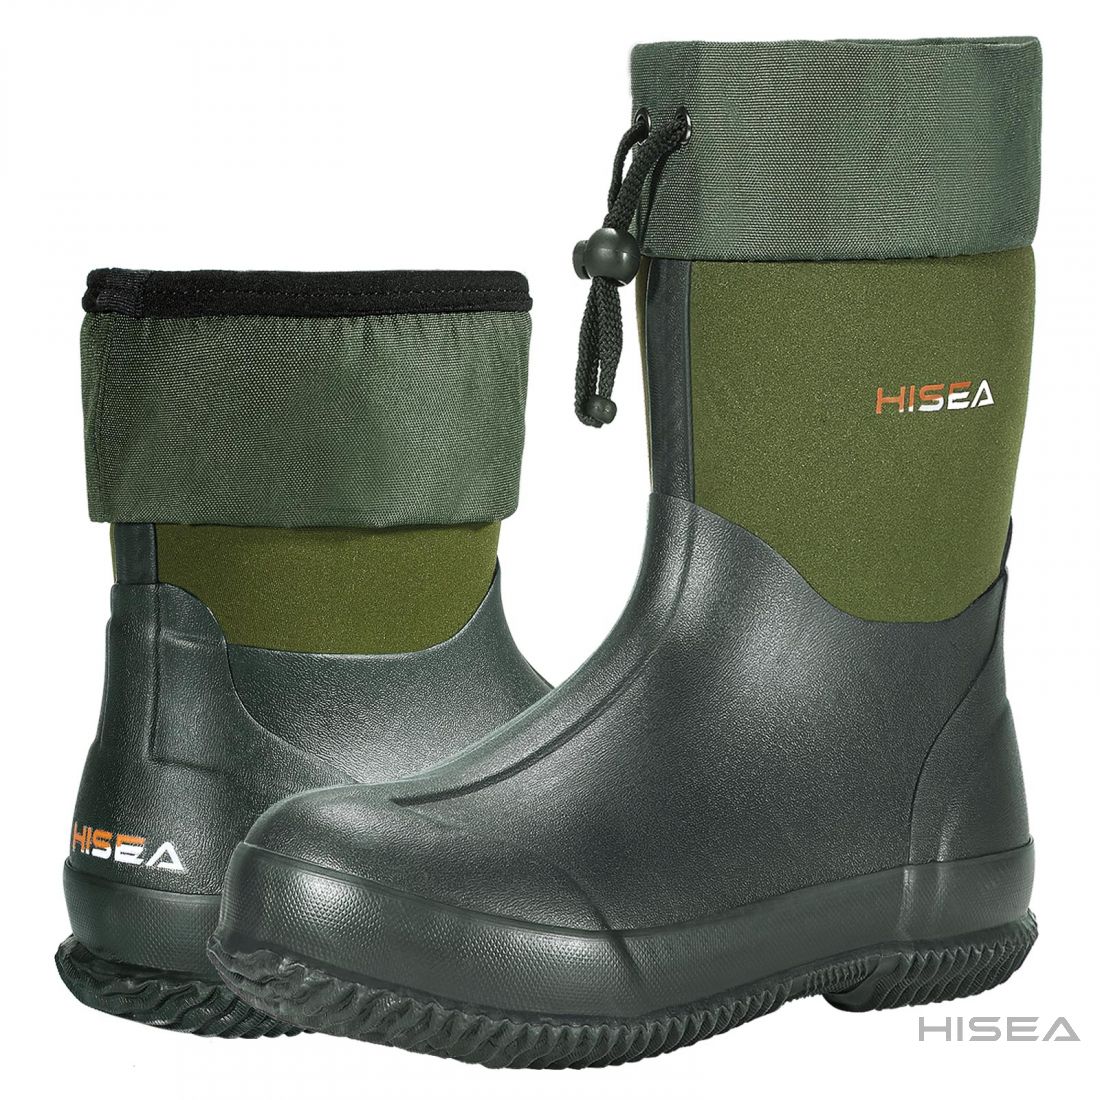 Unisex Mid-Calf Rubber Garden Boots